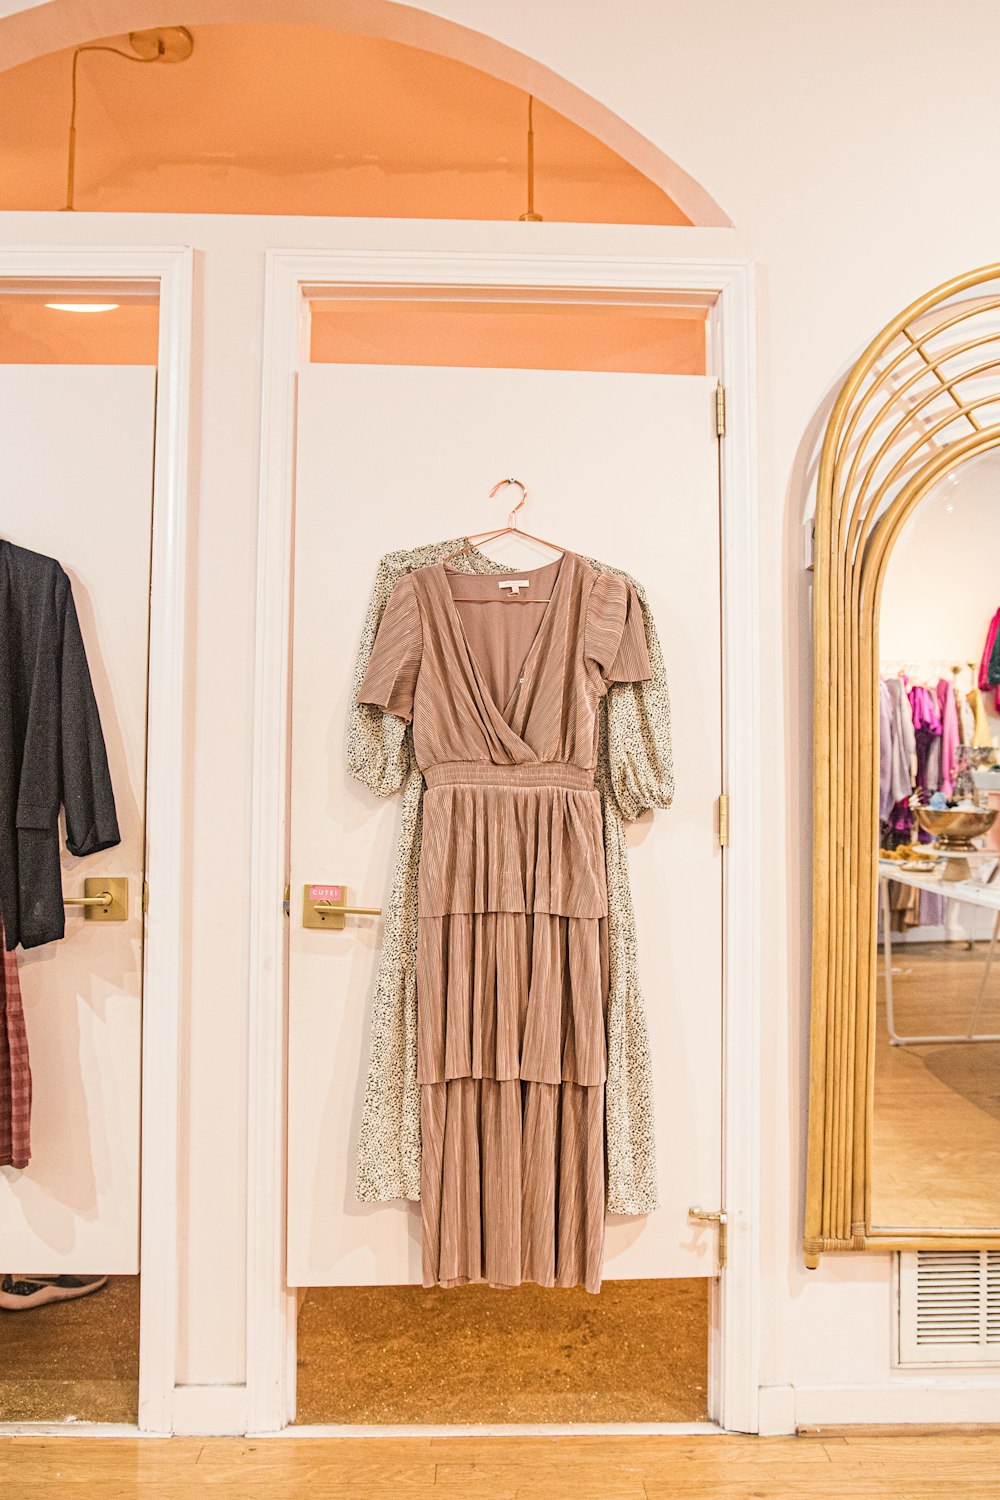 Ein Kleid hängt an einem Kleiderbügel vor einem Spiegel